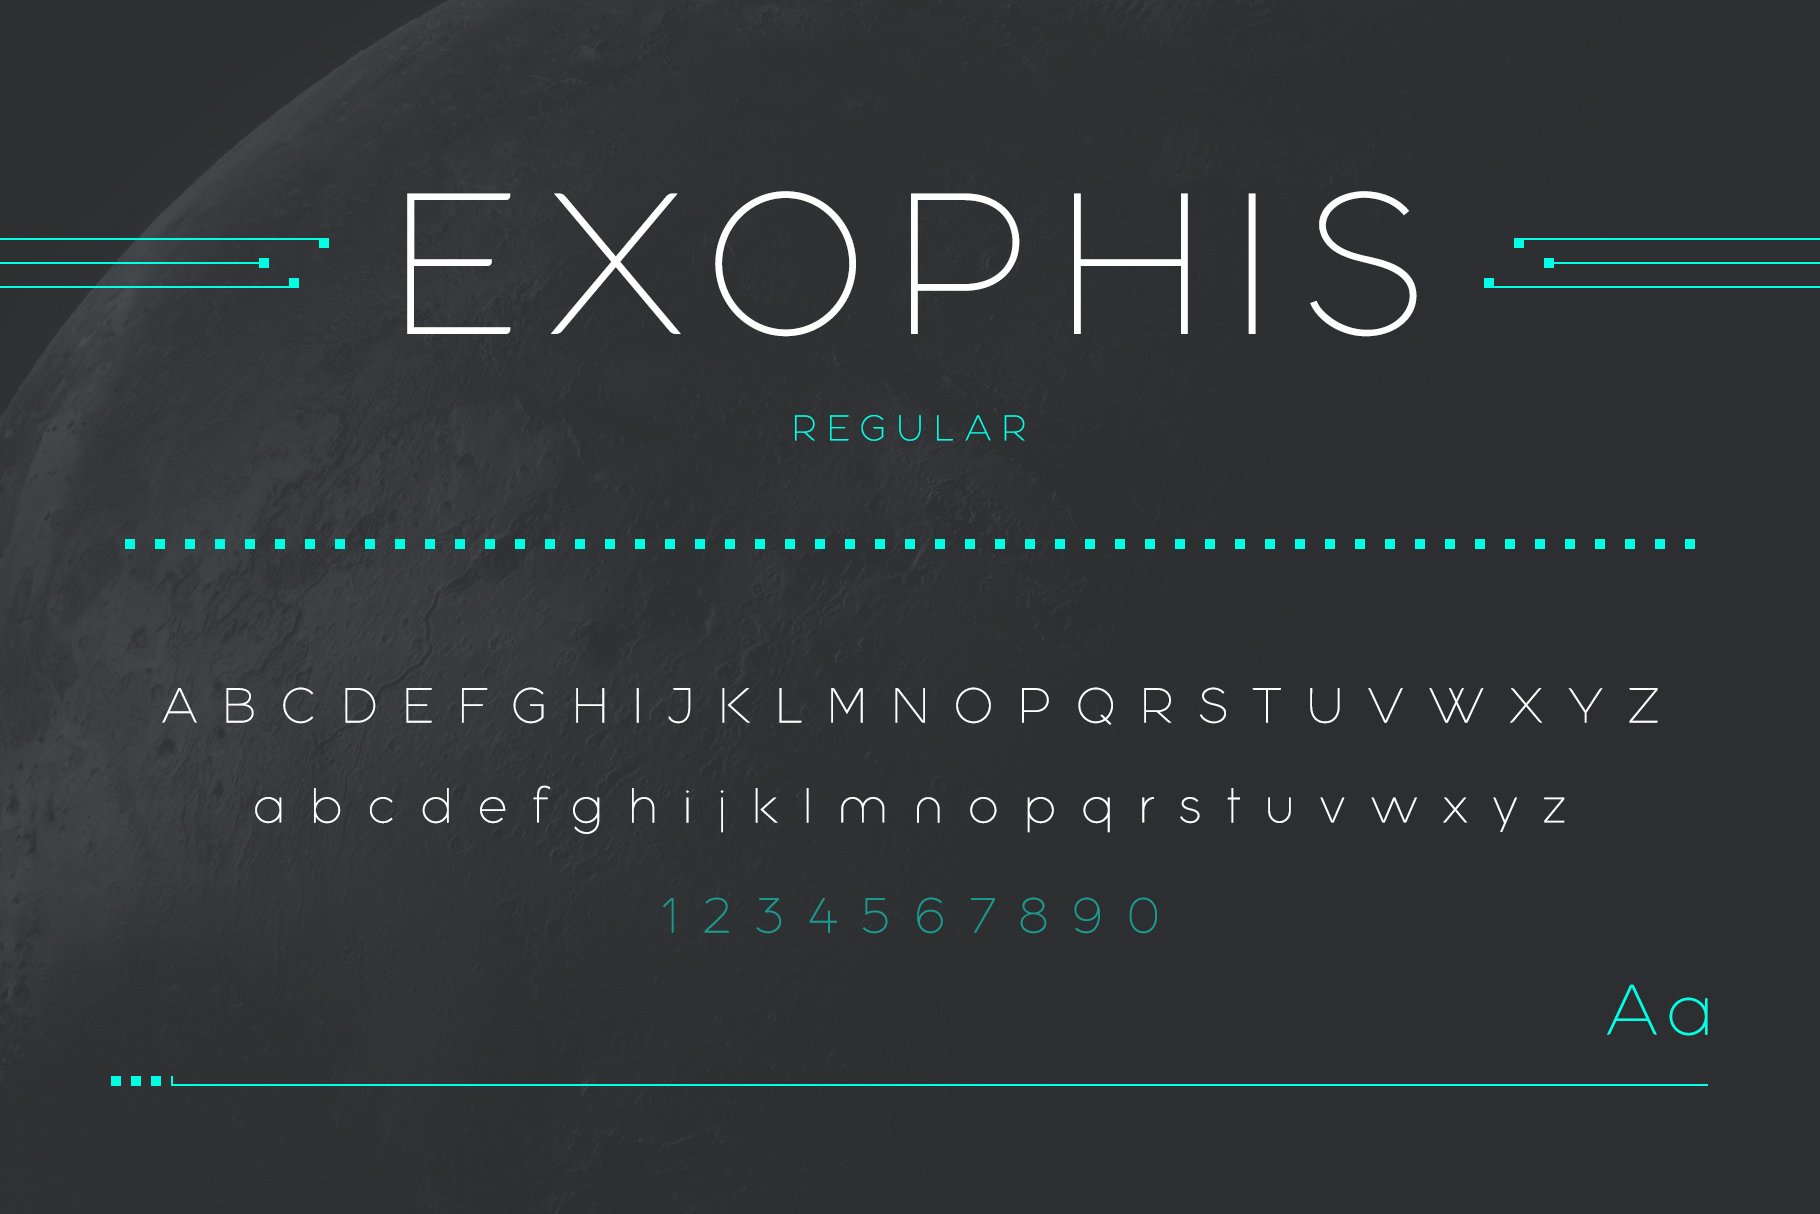 Exophis